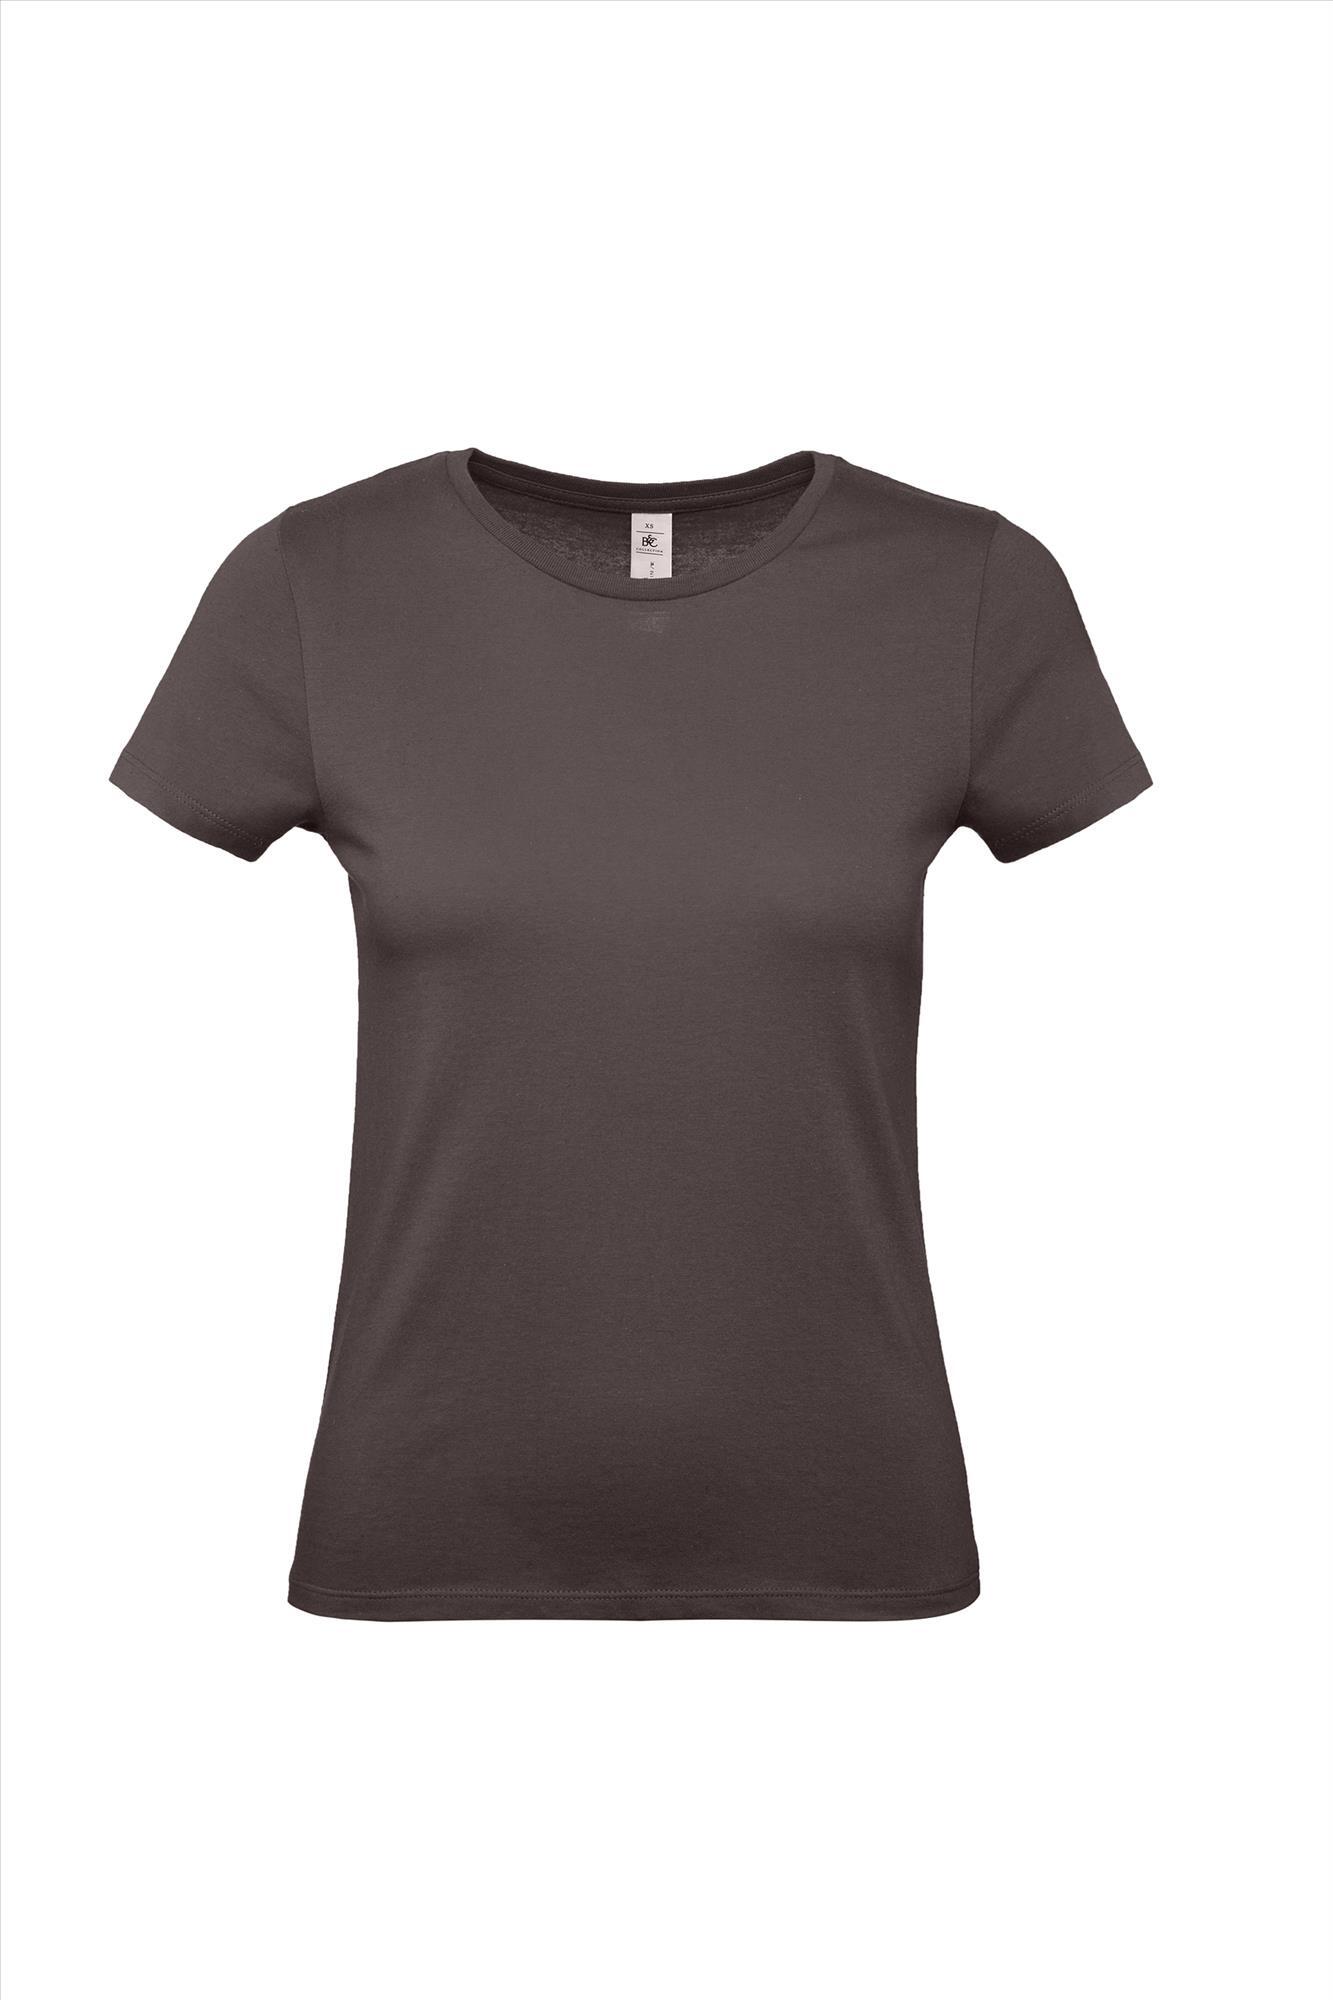 Modern T-shirt voor haar dames shirt bear brown